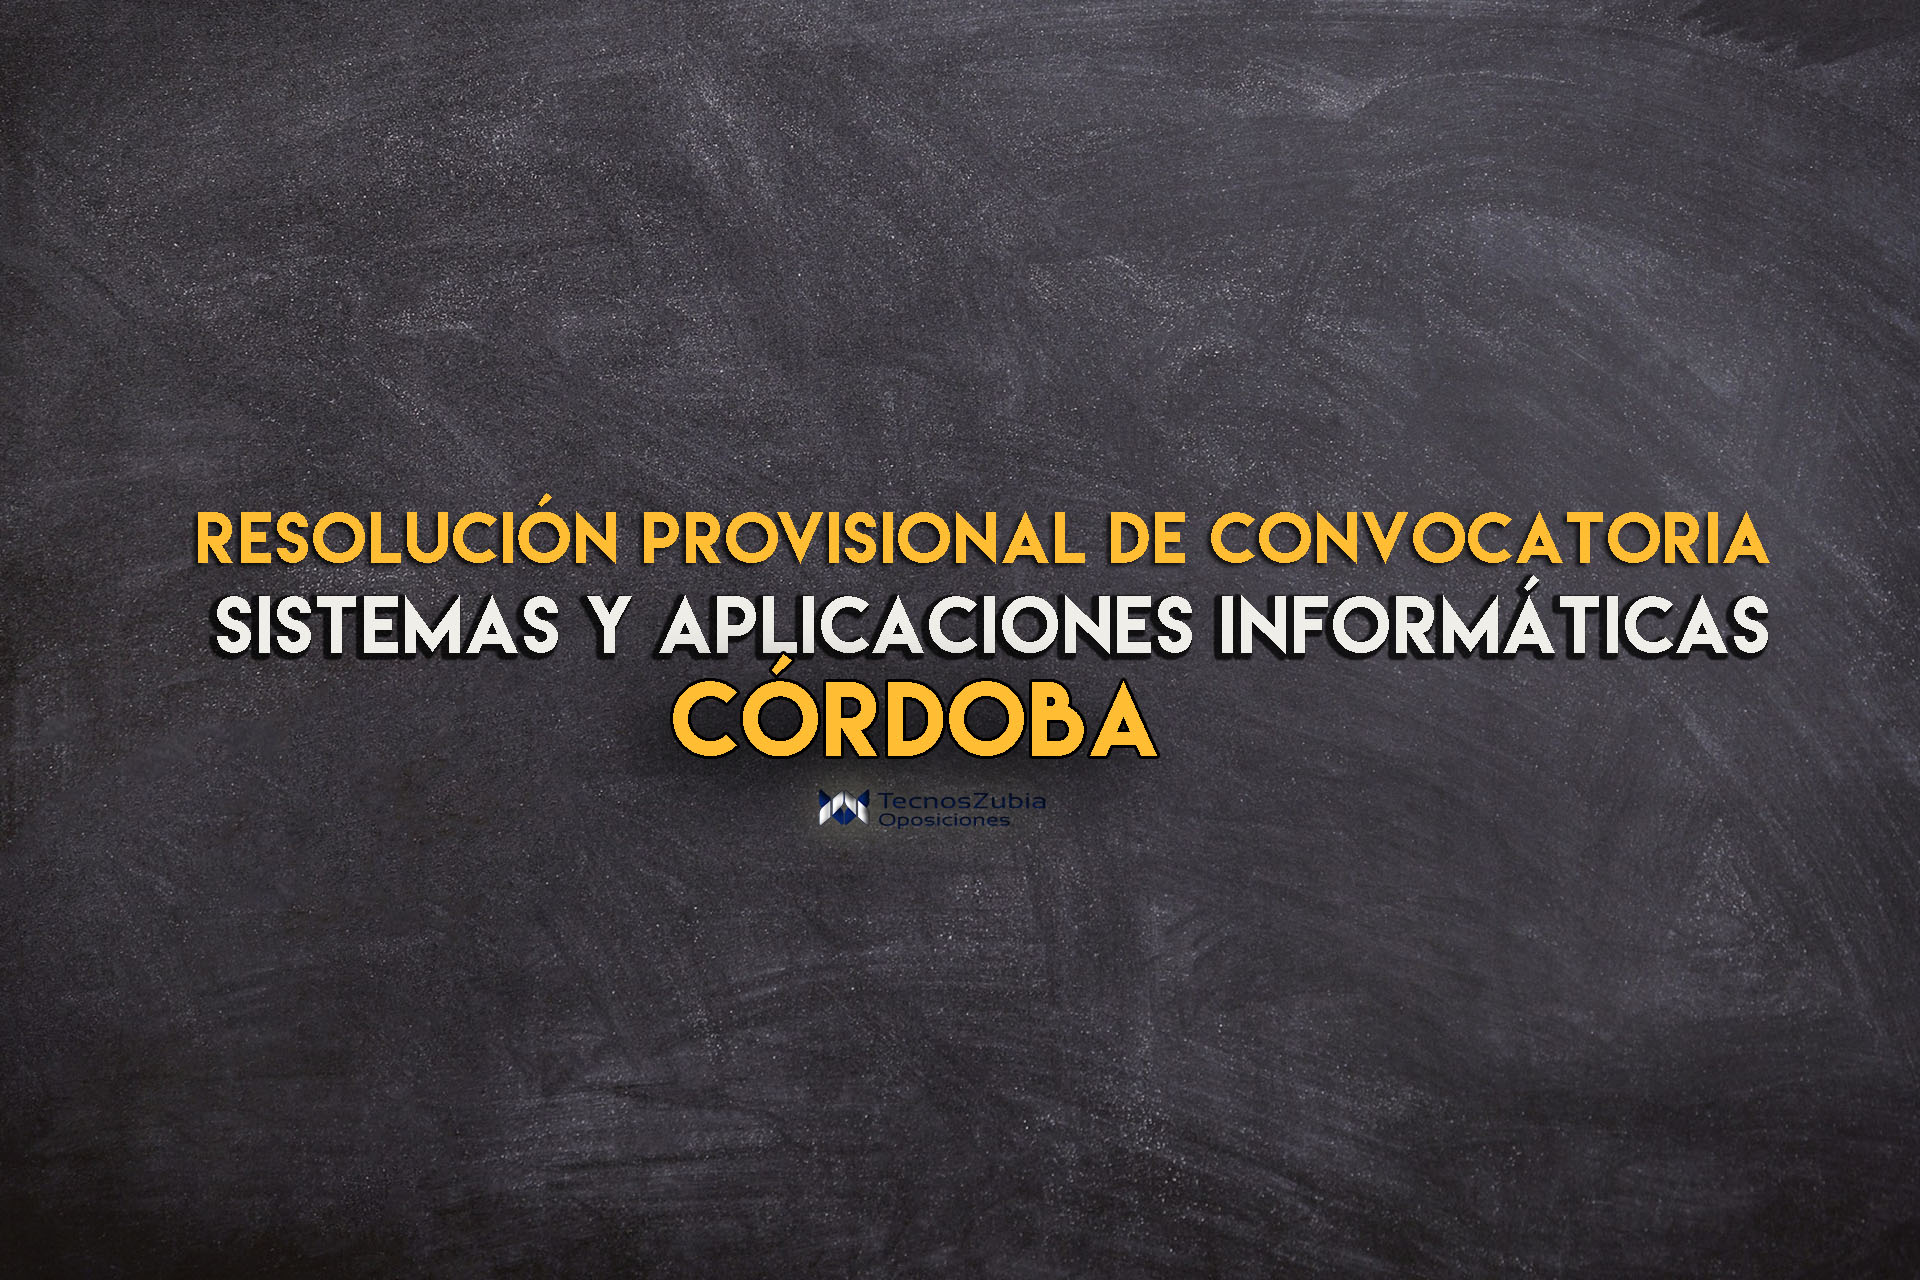 Resolución provisional convocatoria sistemas y aplicaciones informáticas. Córdoba.